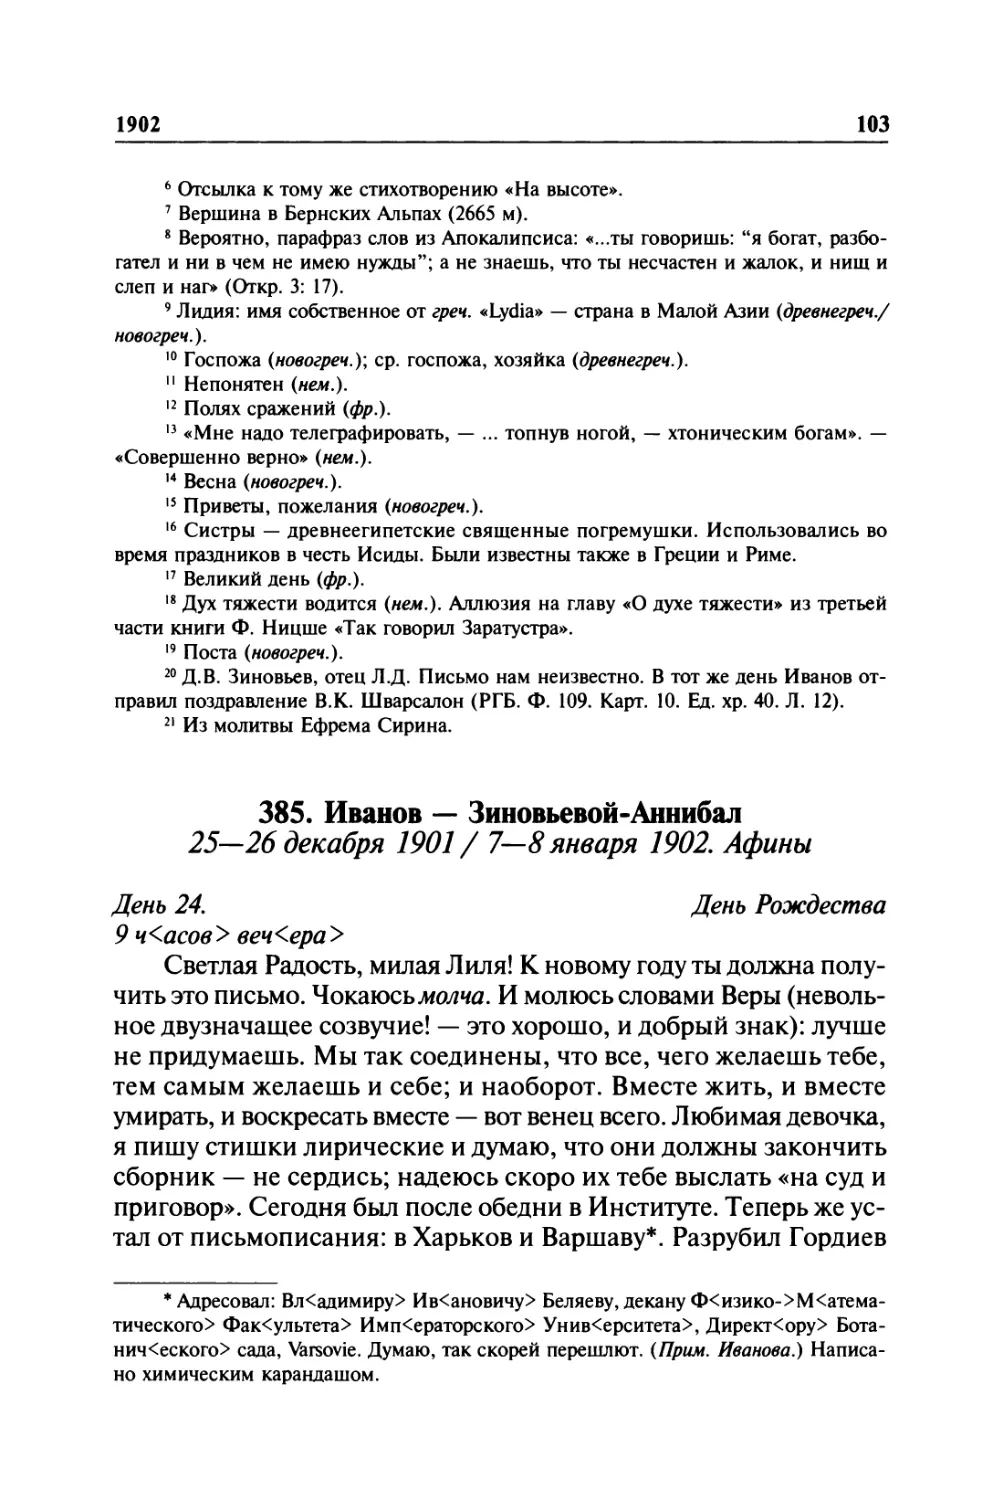 385. Иванов — Зиновьевой-Аннибал. 25—26 декабря 1901 / 7—8 января 1902. Афины